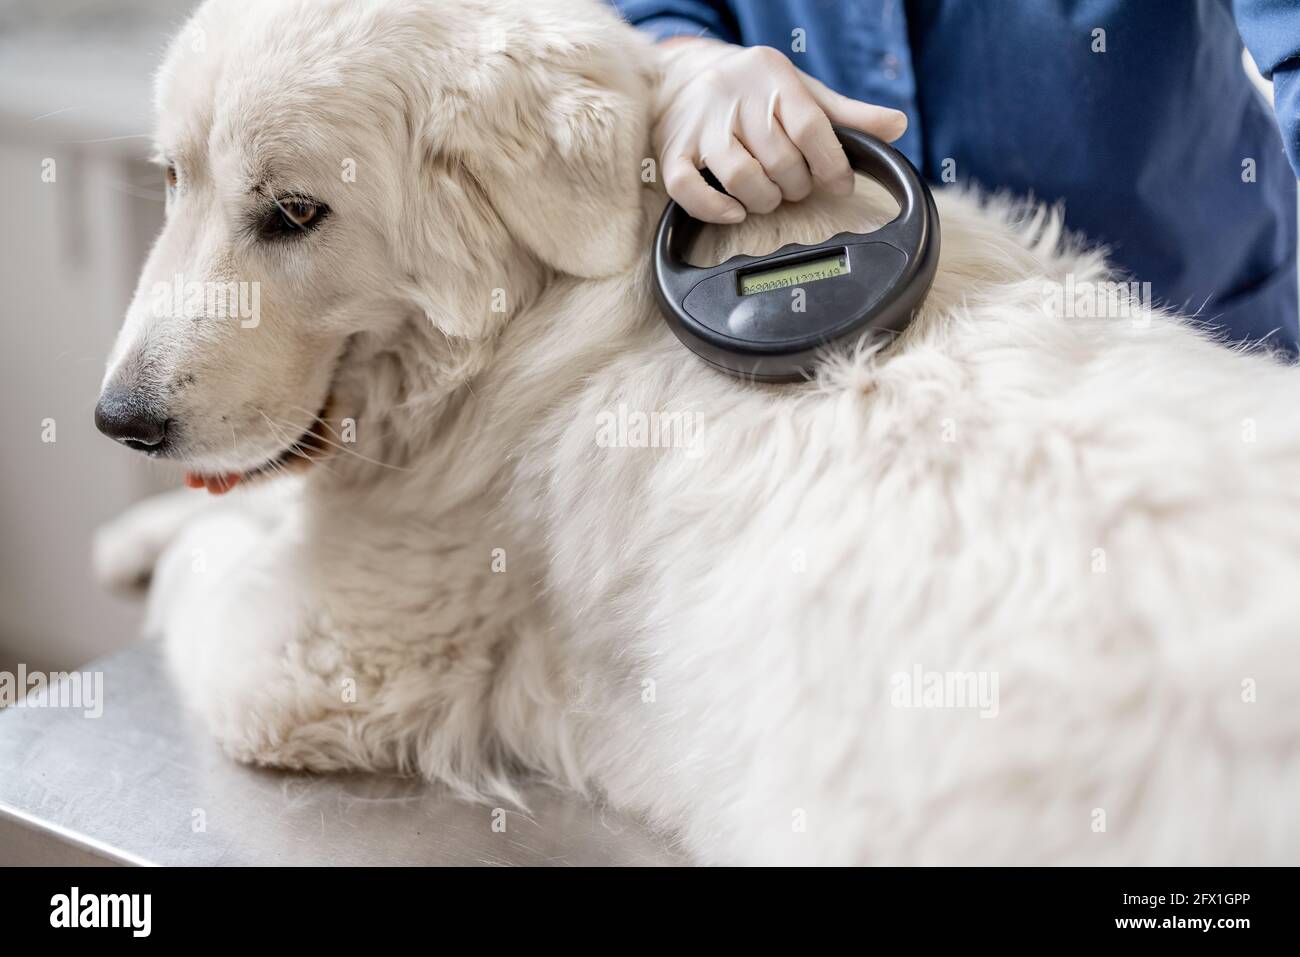 Vétérinaire vérifiant l'implant de micropuce sous la peau de chien de  berger dans la clinique vétérinaire avec dispositif de scanner.  Enregistrement et identification des animaux de compagnie. Passeport  d'identification d'animal Photo Stock -